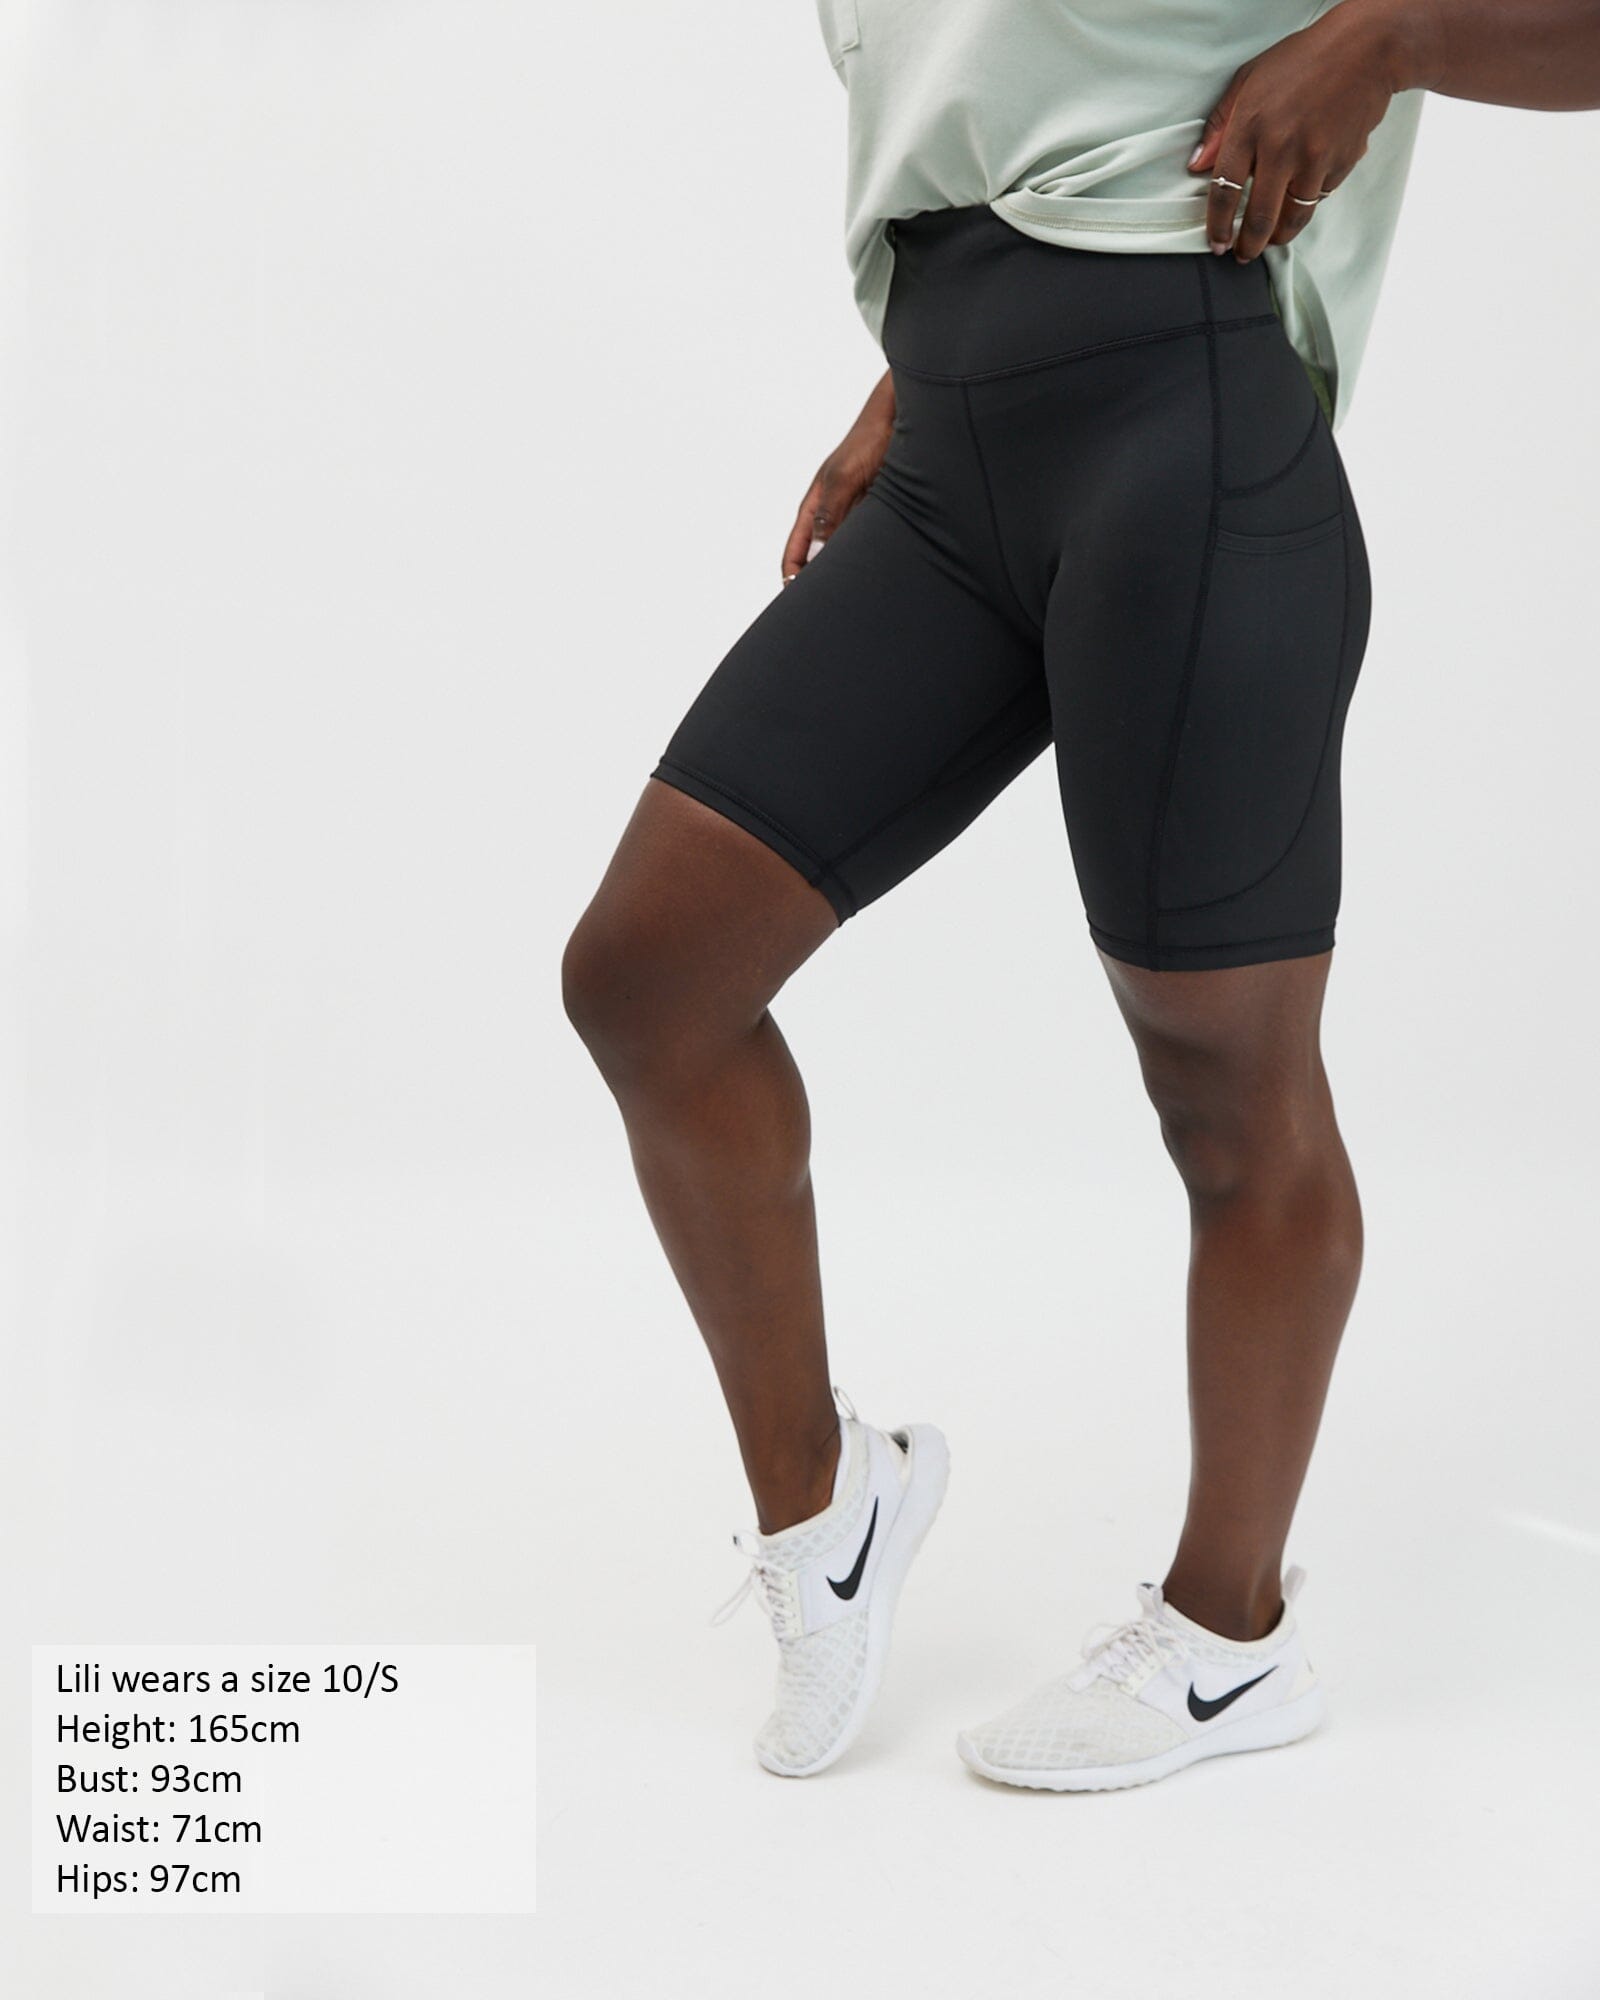 Active living bike shorts - 3 pocket - Black Leggings Avila the label 10/S 